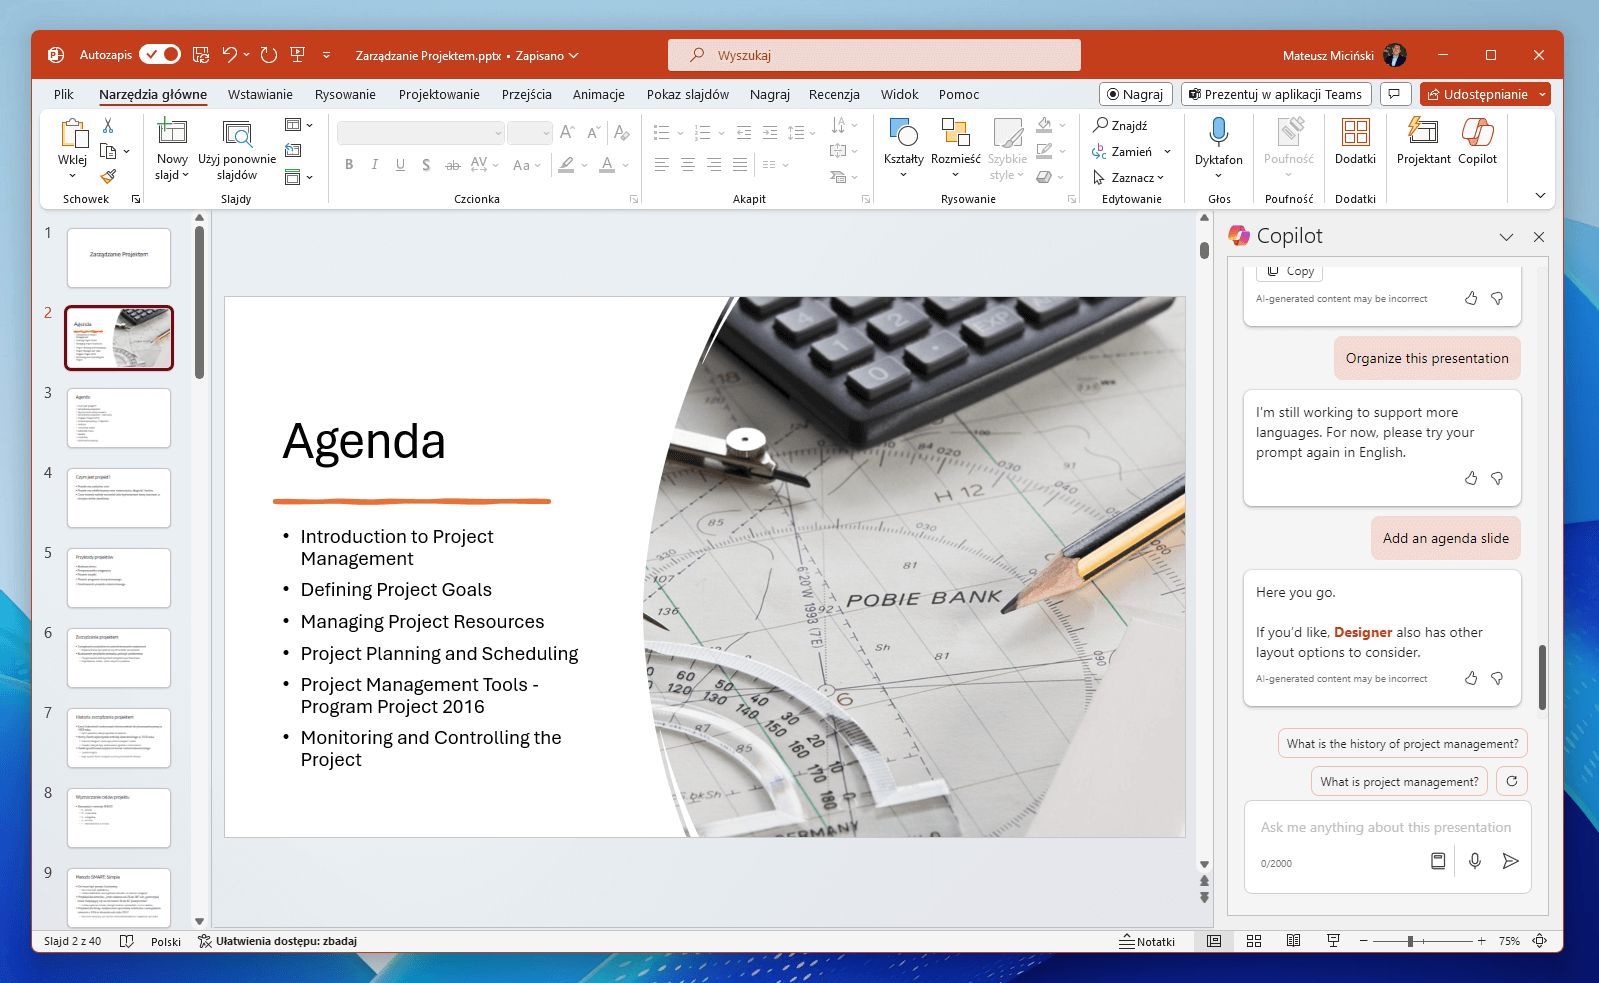 Jak działa Copilot w PowerPoint?